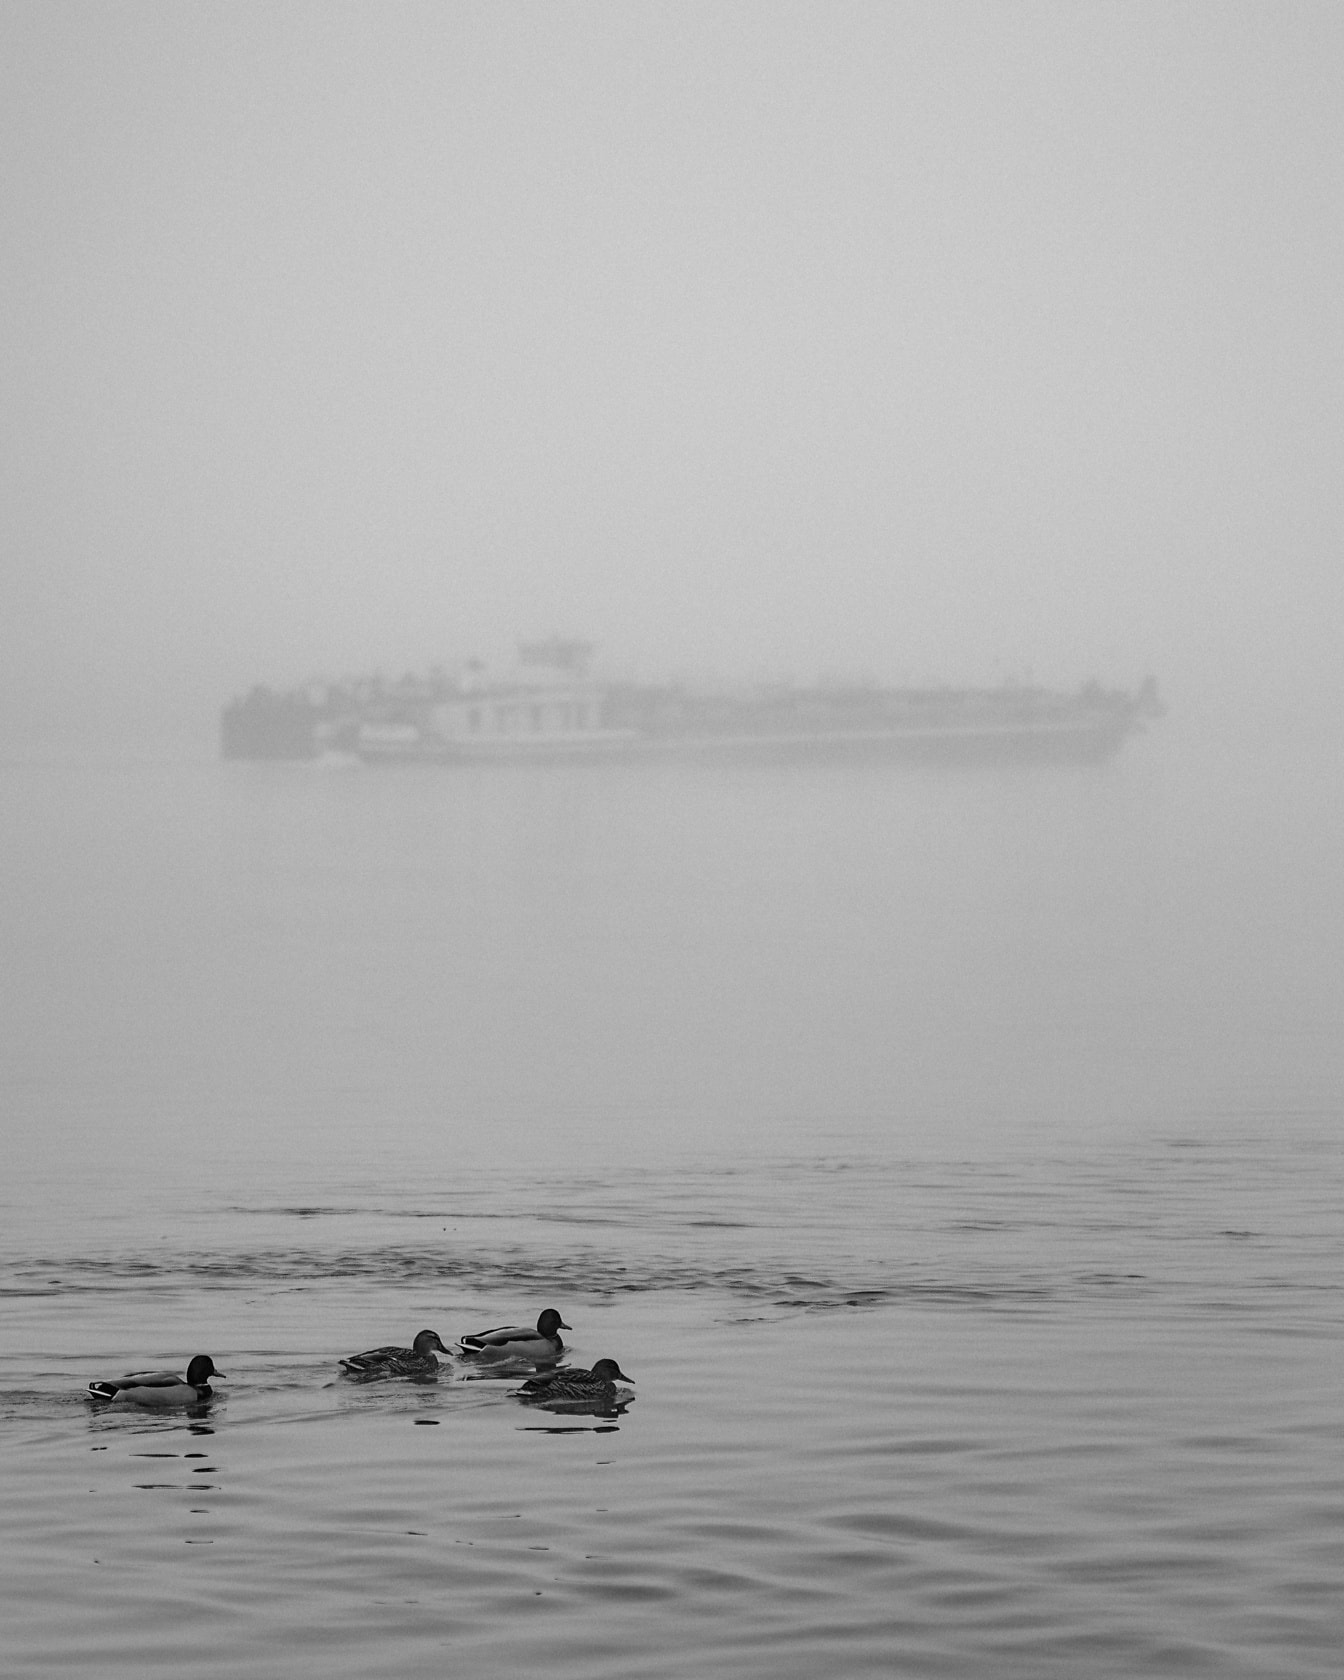 Patke plivaju u vodi s brodom u gustoj magli u pozadini